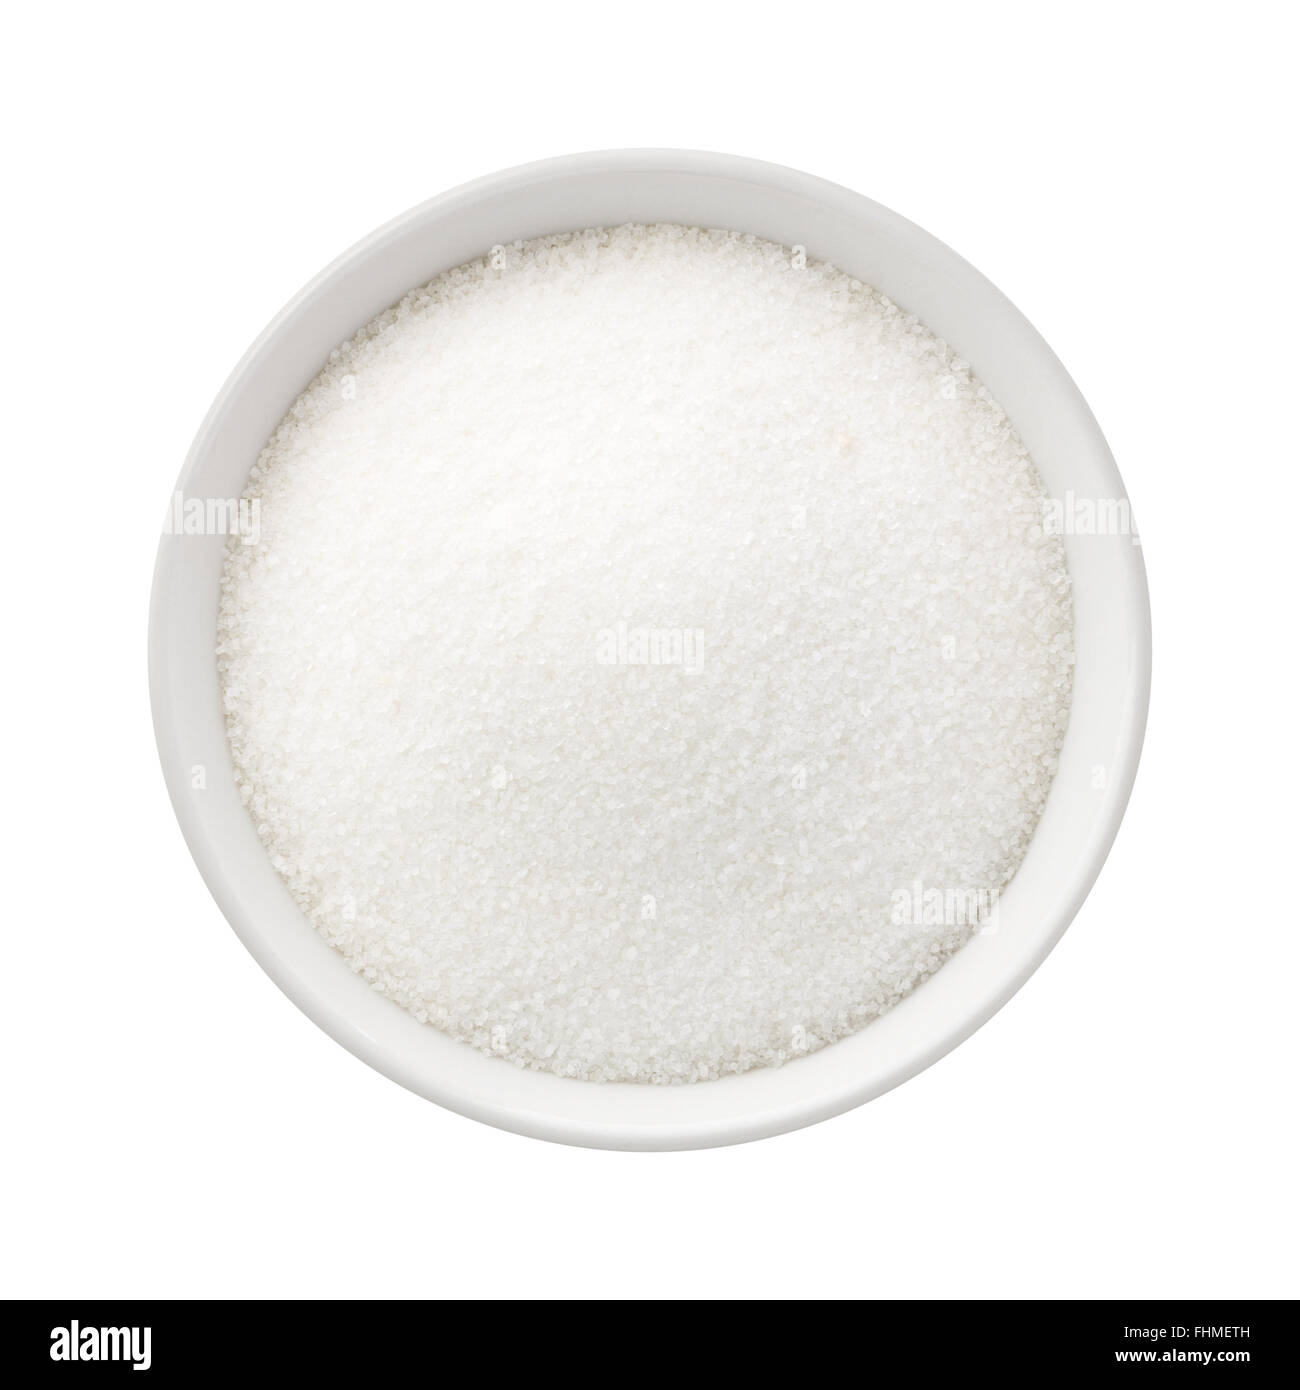 El azúcar refinado en un cuenco de cerámica. La imagen es un recorte, aislado en un fondo blanco. Foto de stock